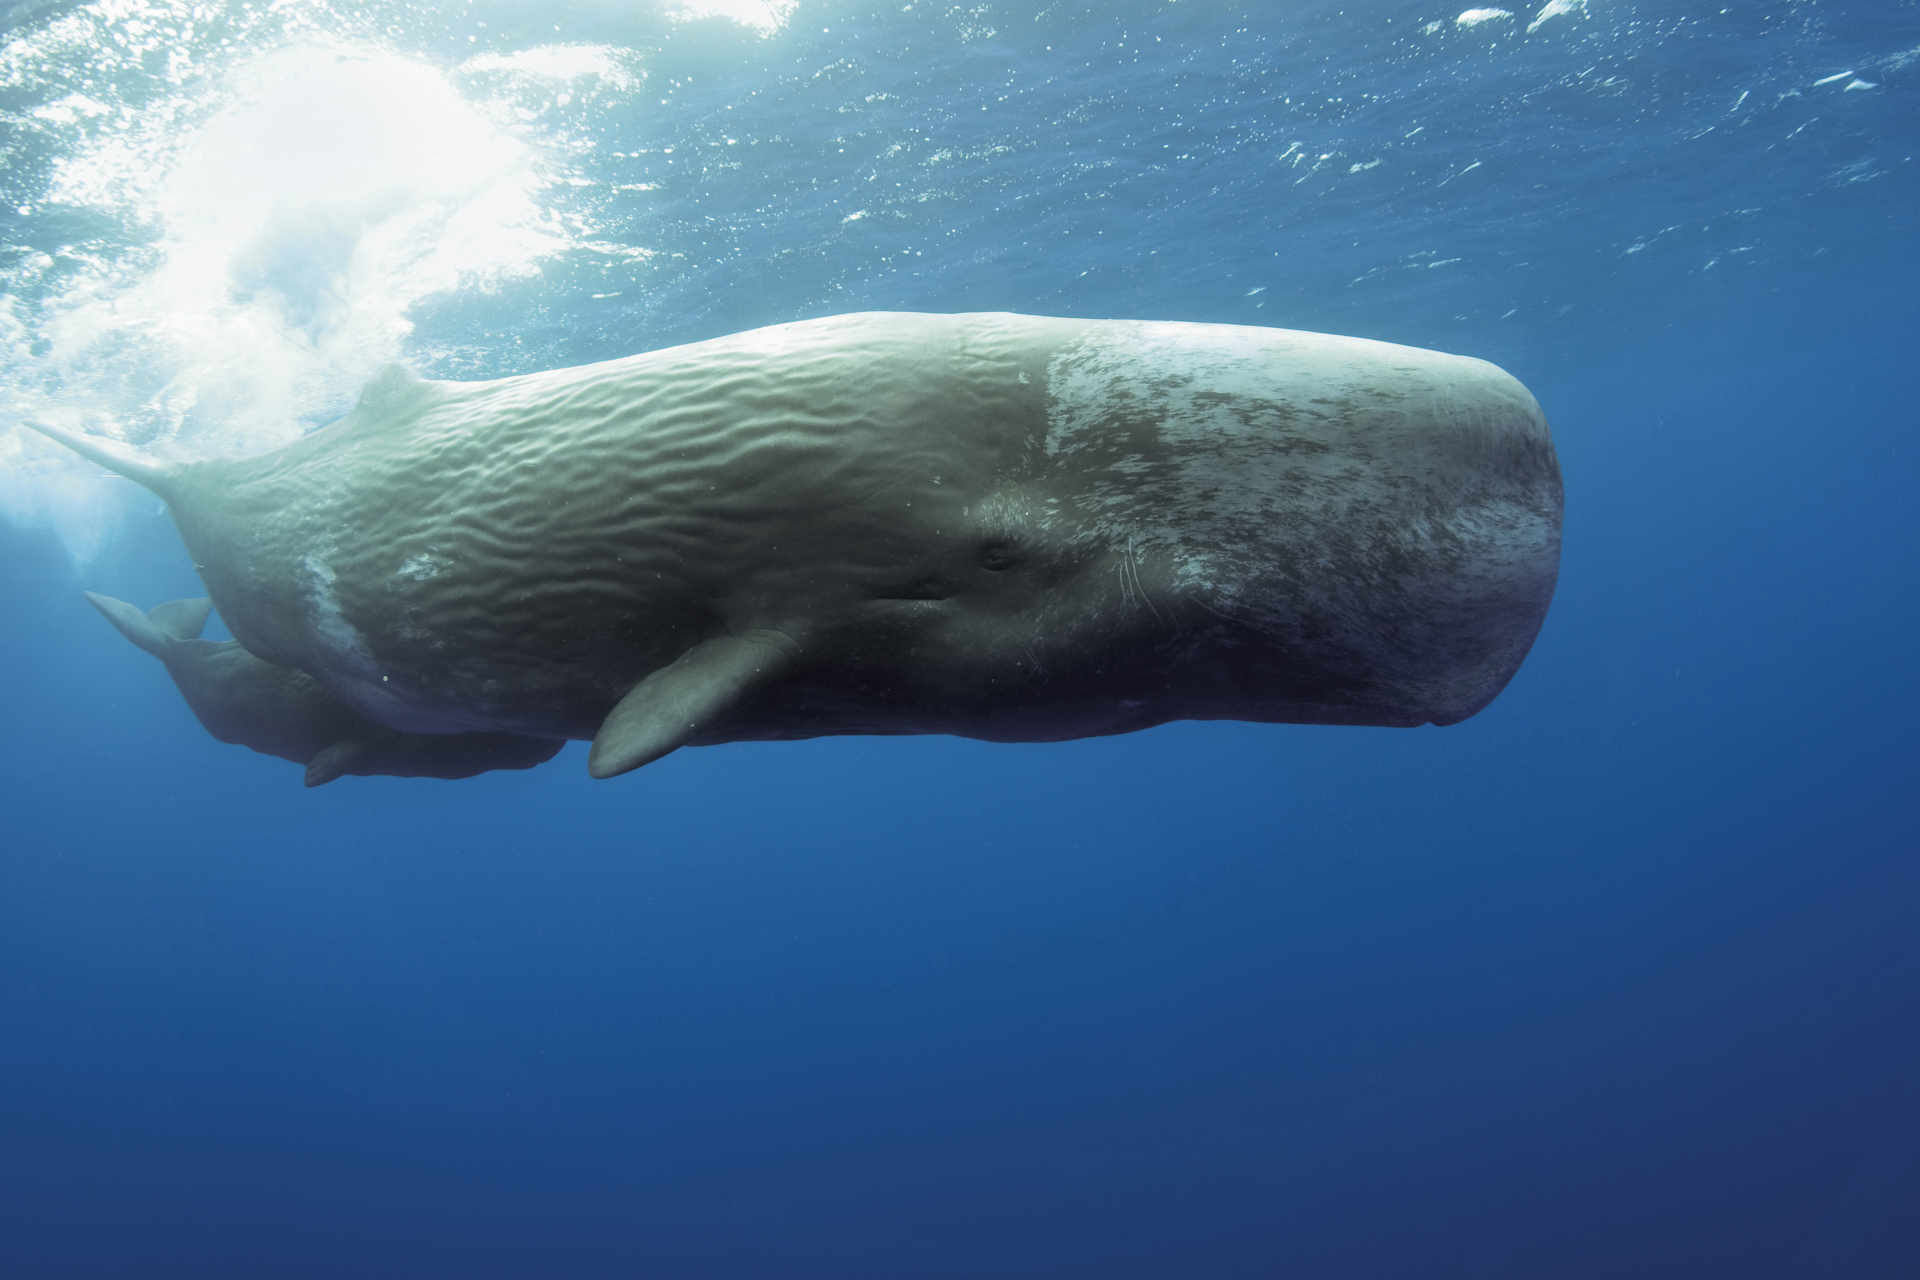 Maori: Koliko kitovi sperme vrijede živi?